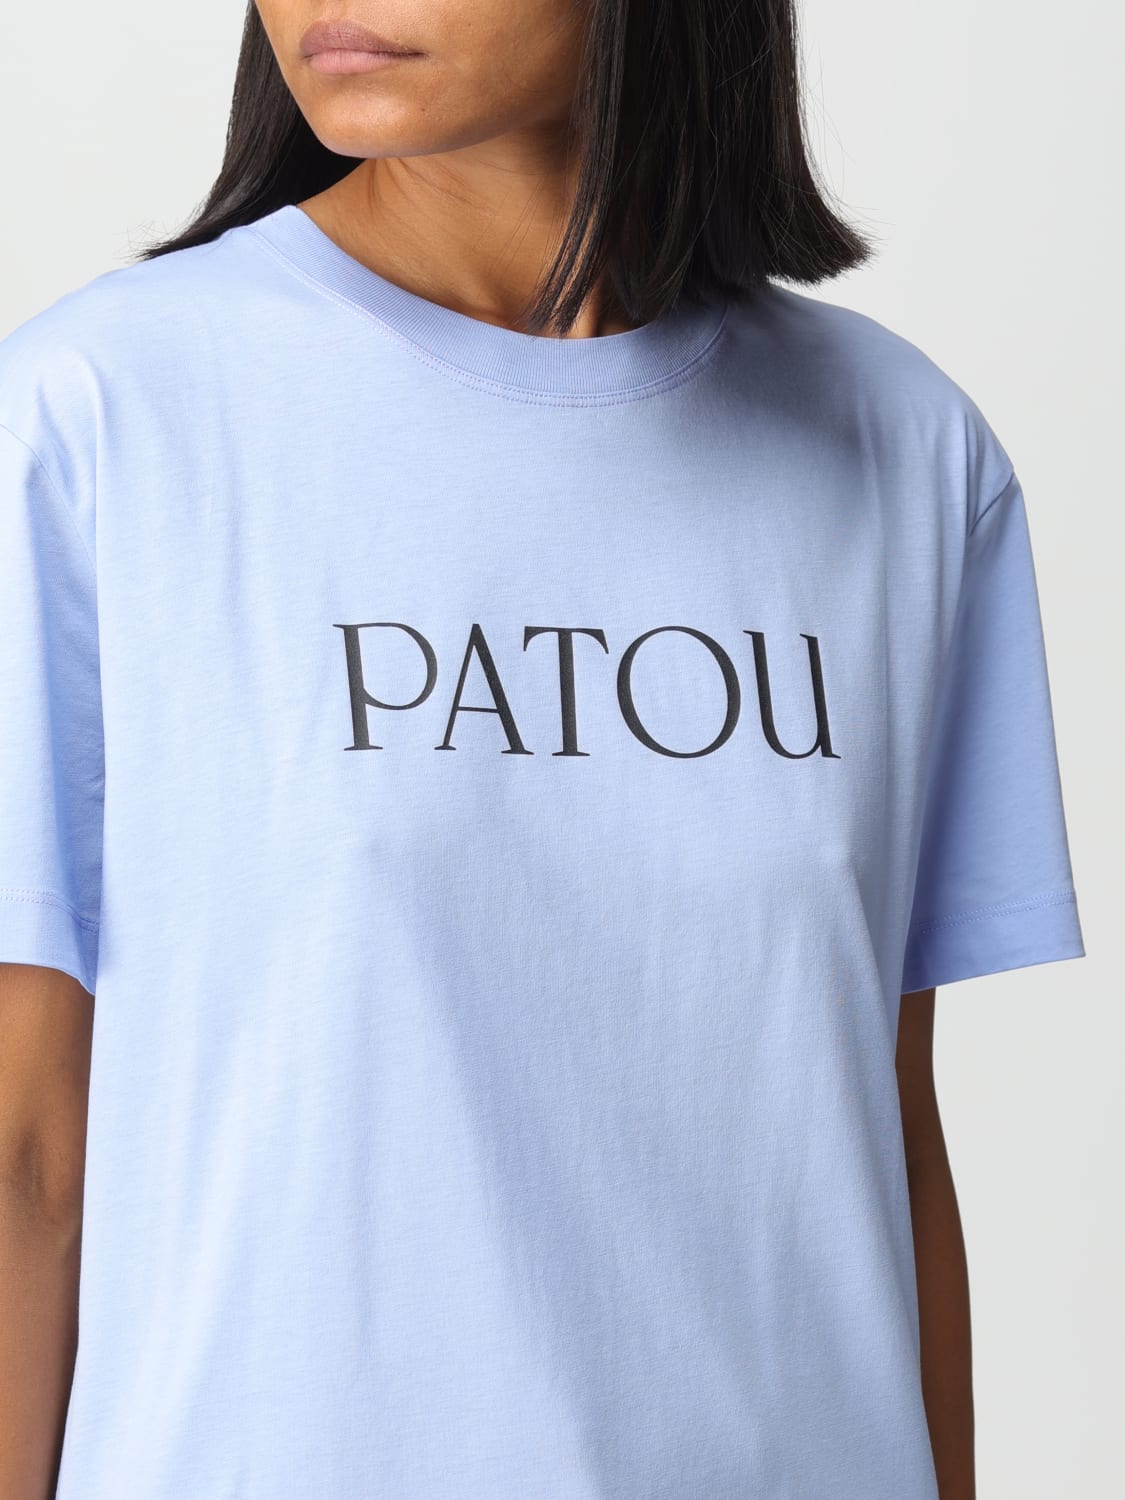 よろしくお願いいたしますPATOU Tシャツ